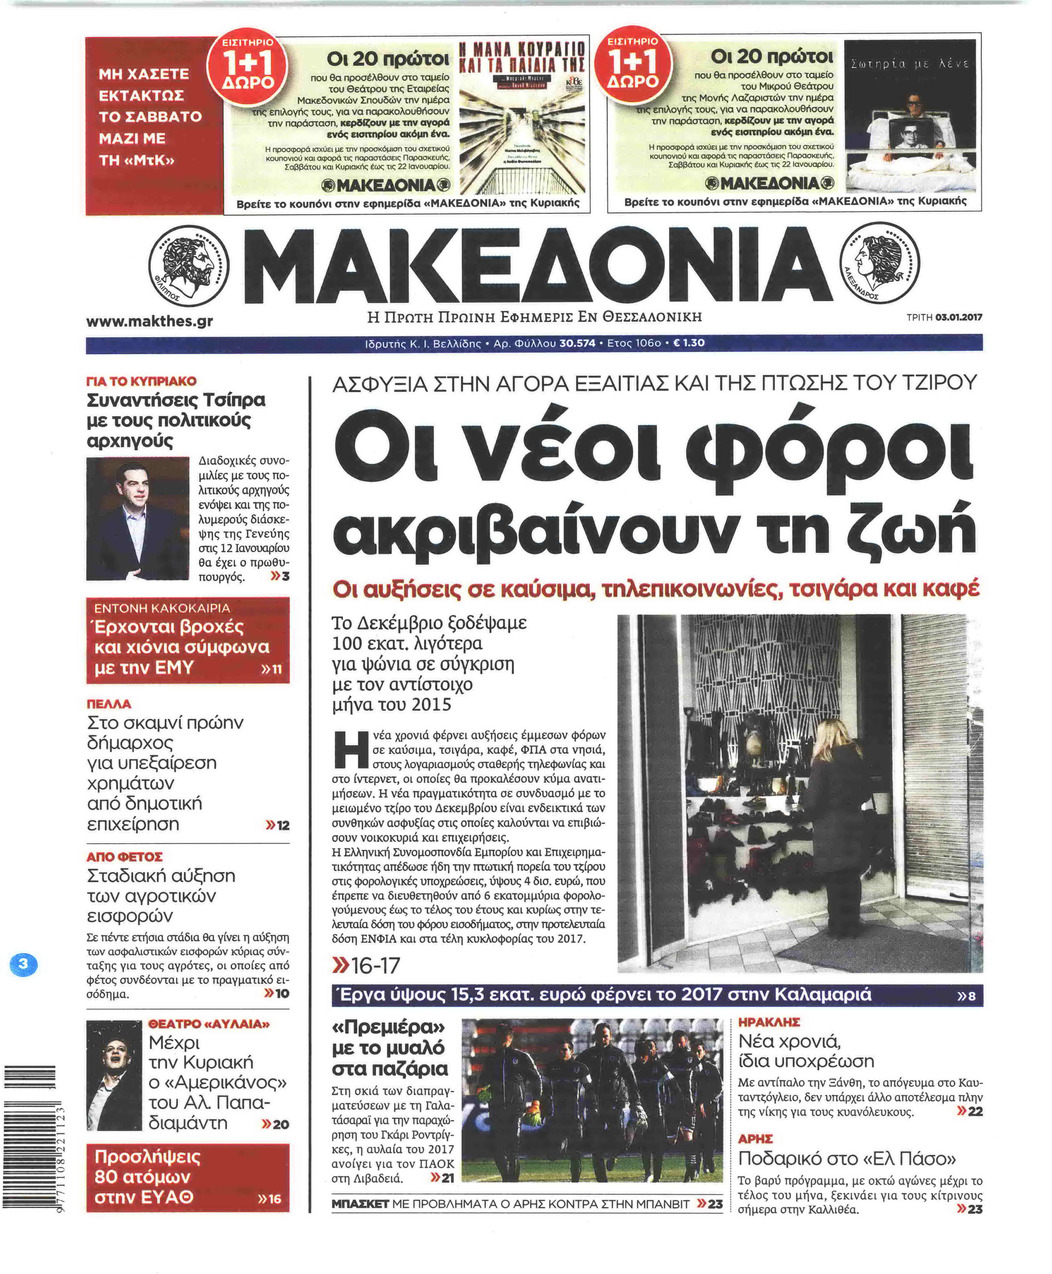 Πρωτοσέλιδο εφημερίδας Μακεδονία